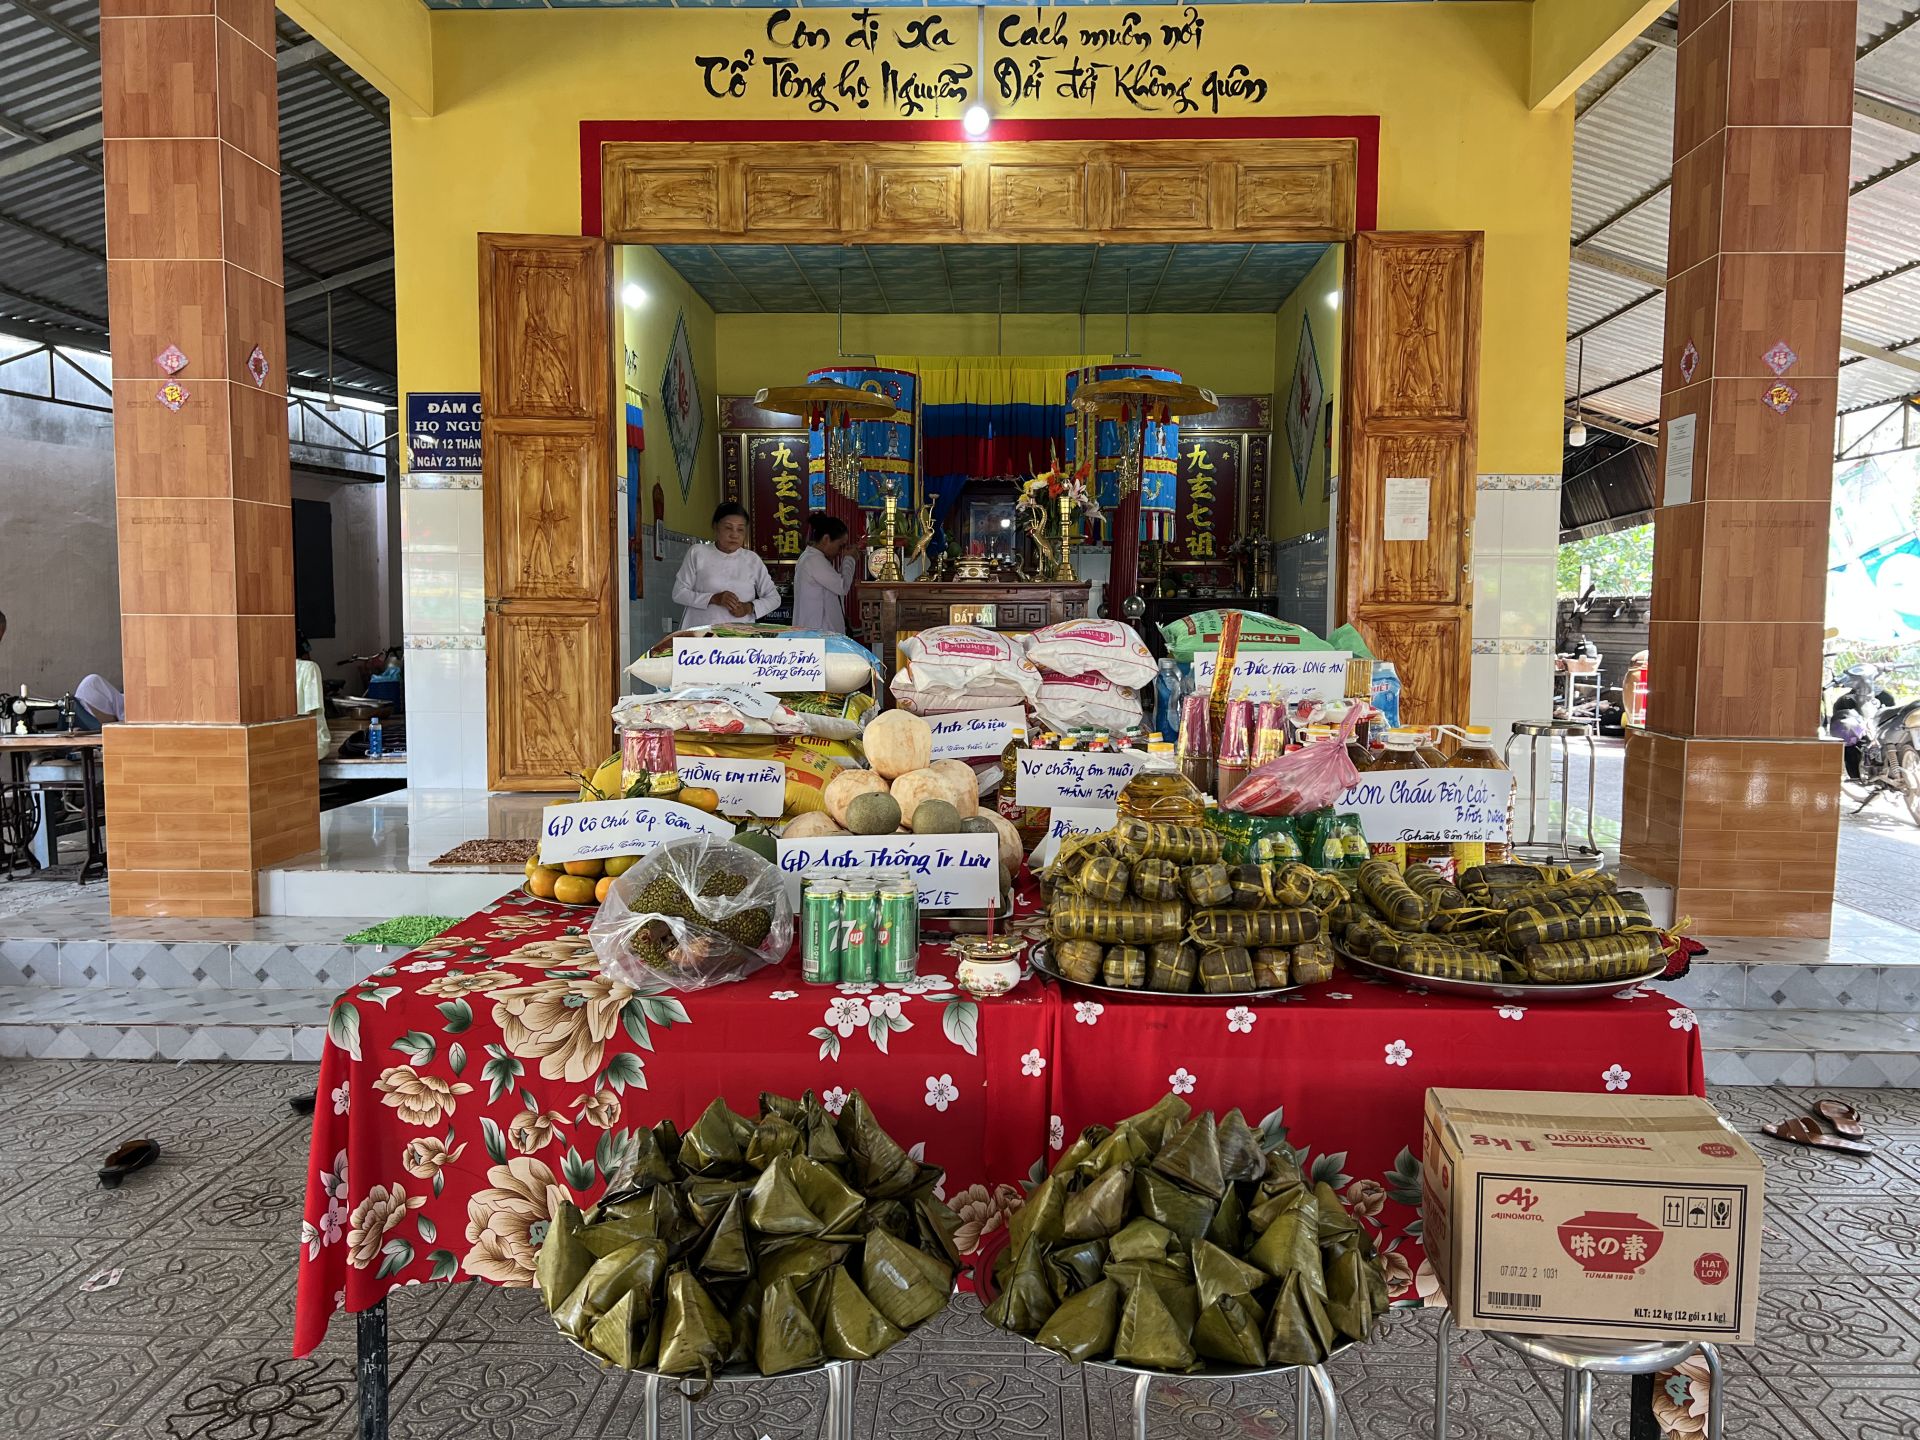 Dòng họ Nguyễn ở Hòa Thành của Tây Ninh ngày giỗ họ có tới 62 món chay - Ảnh 3.